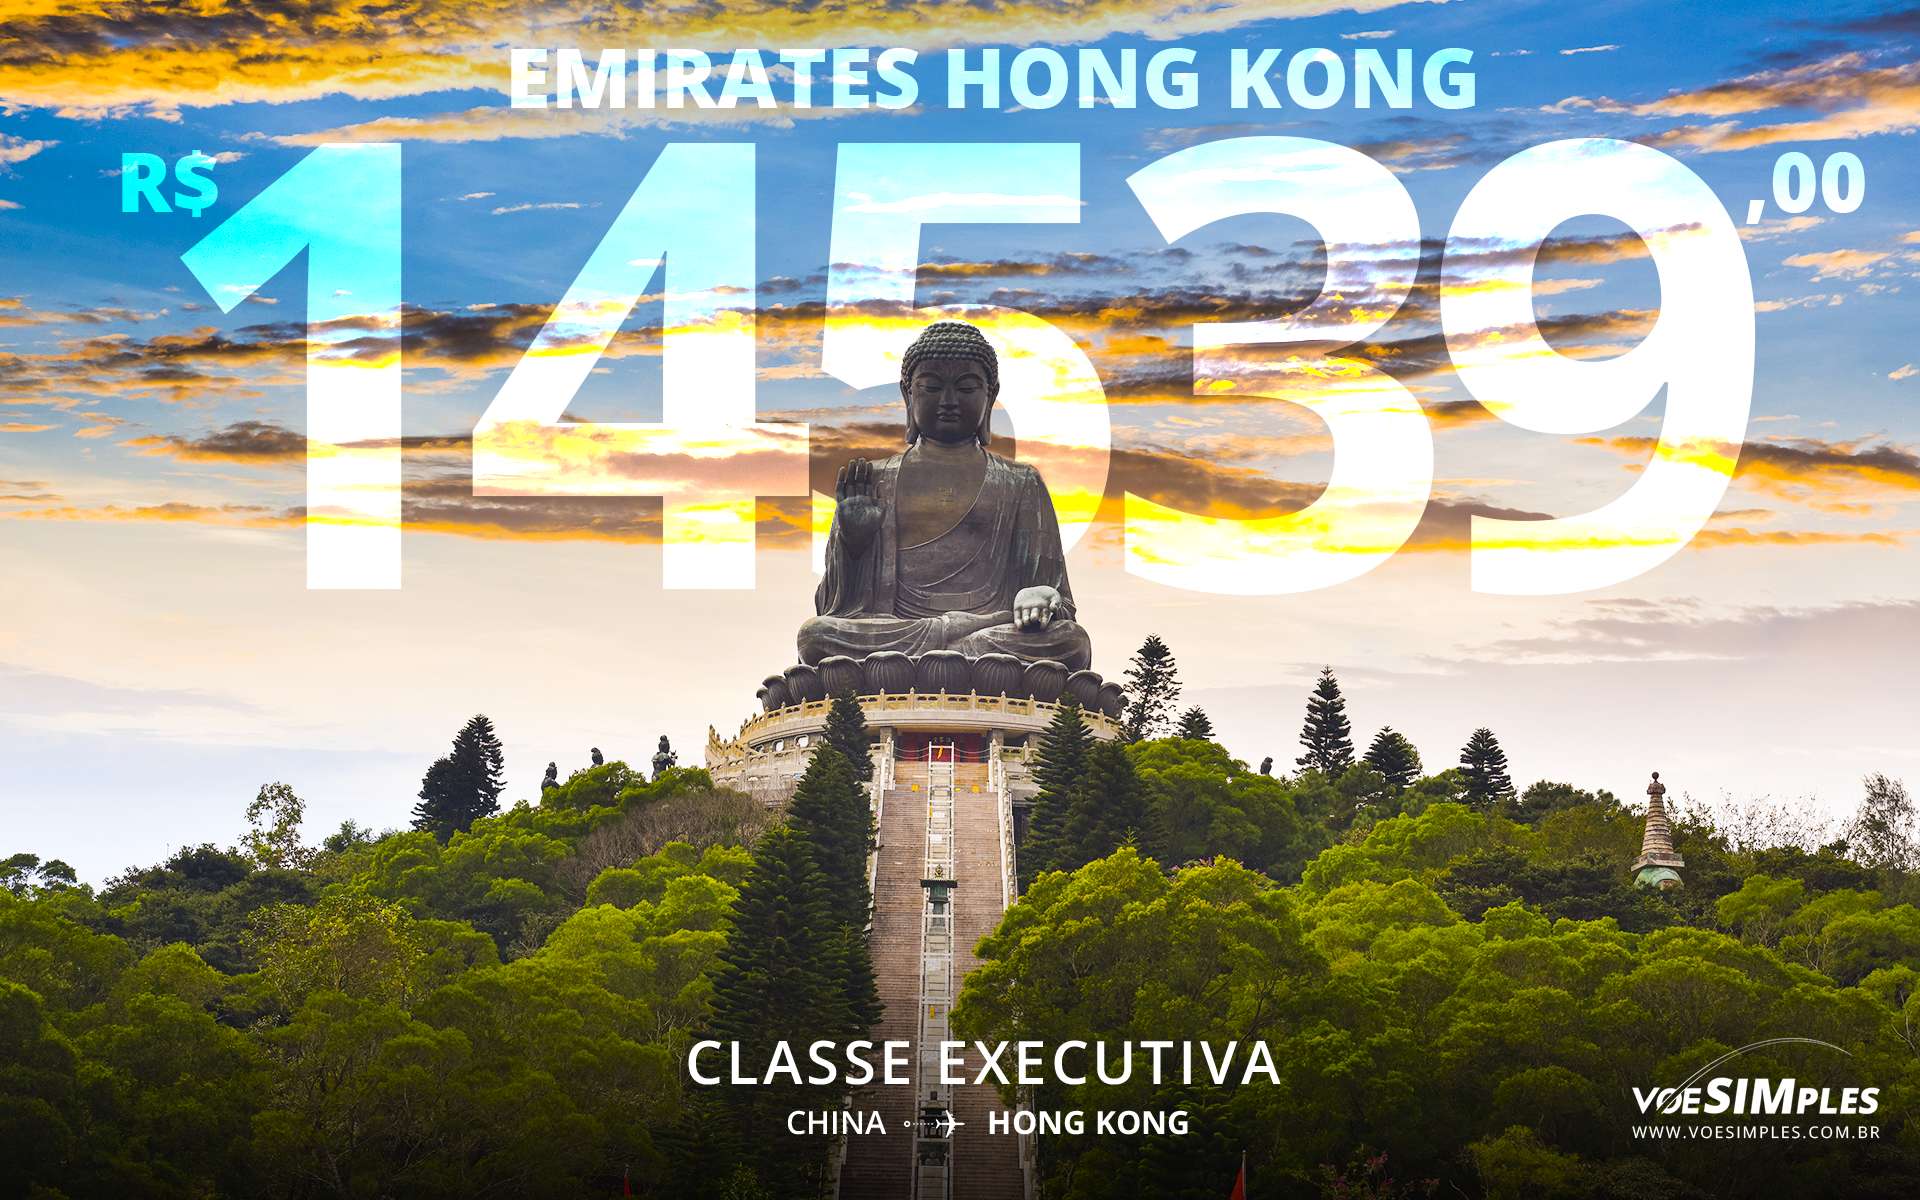 Passagem Aérea Classe executiva Emirates